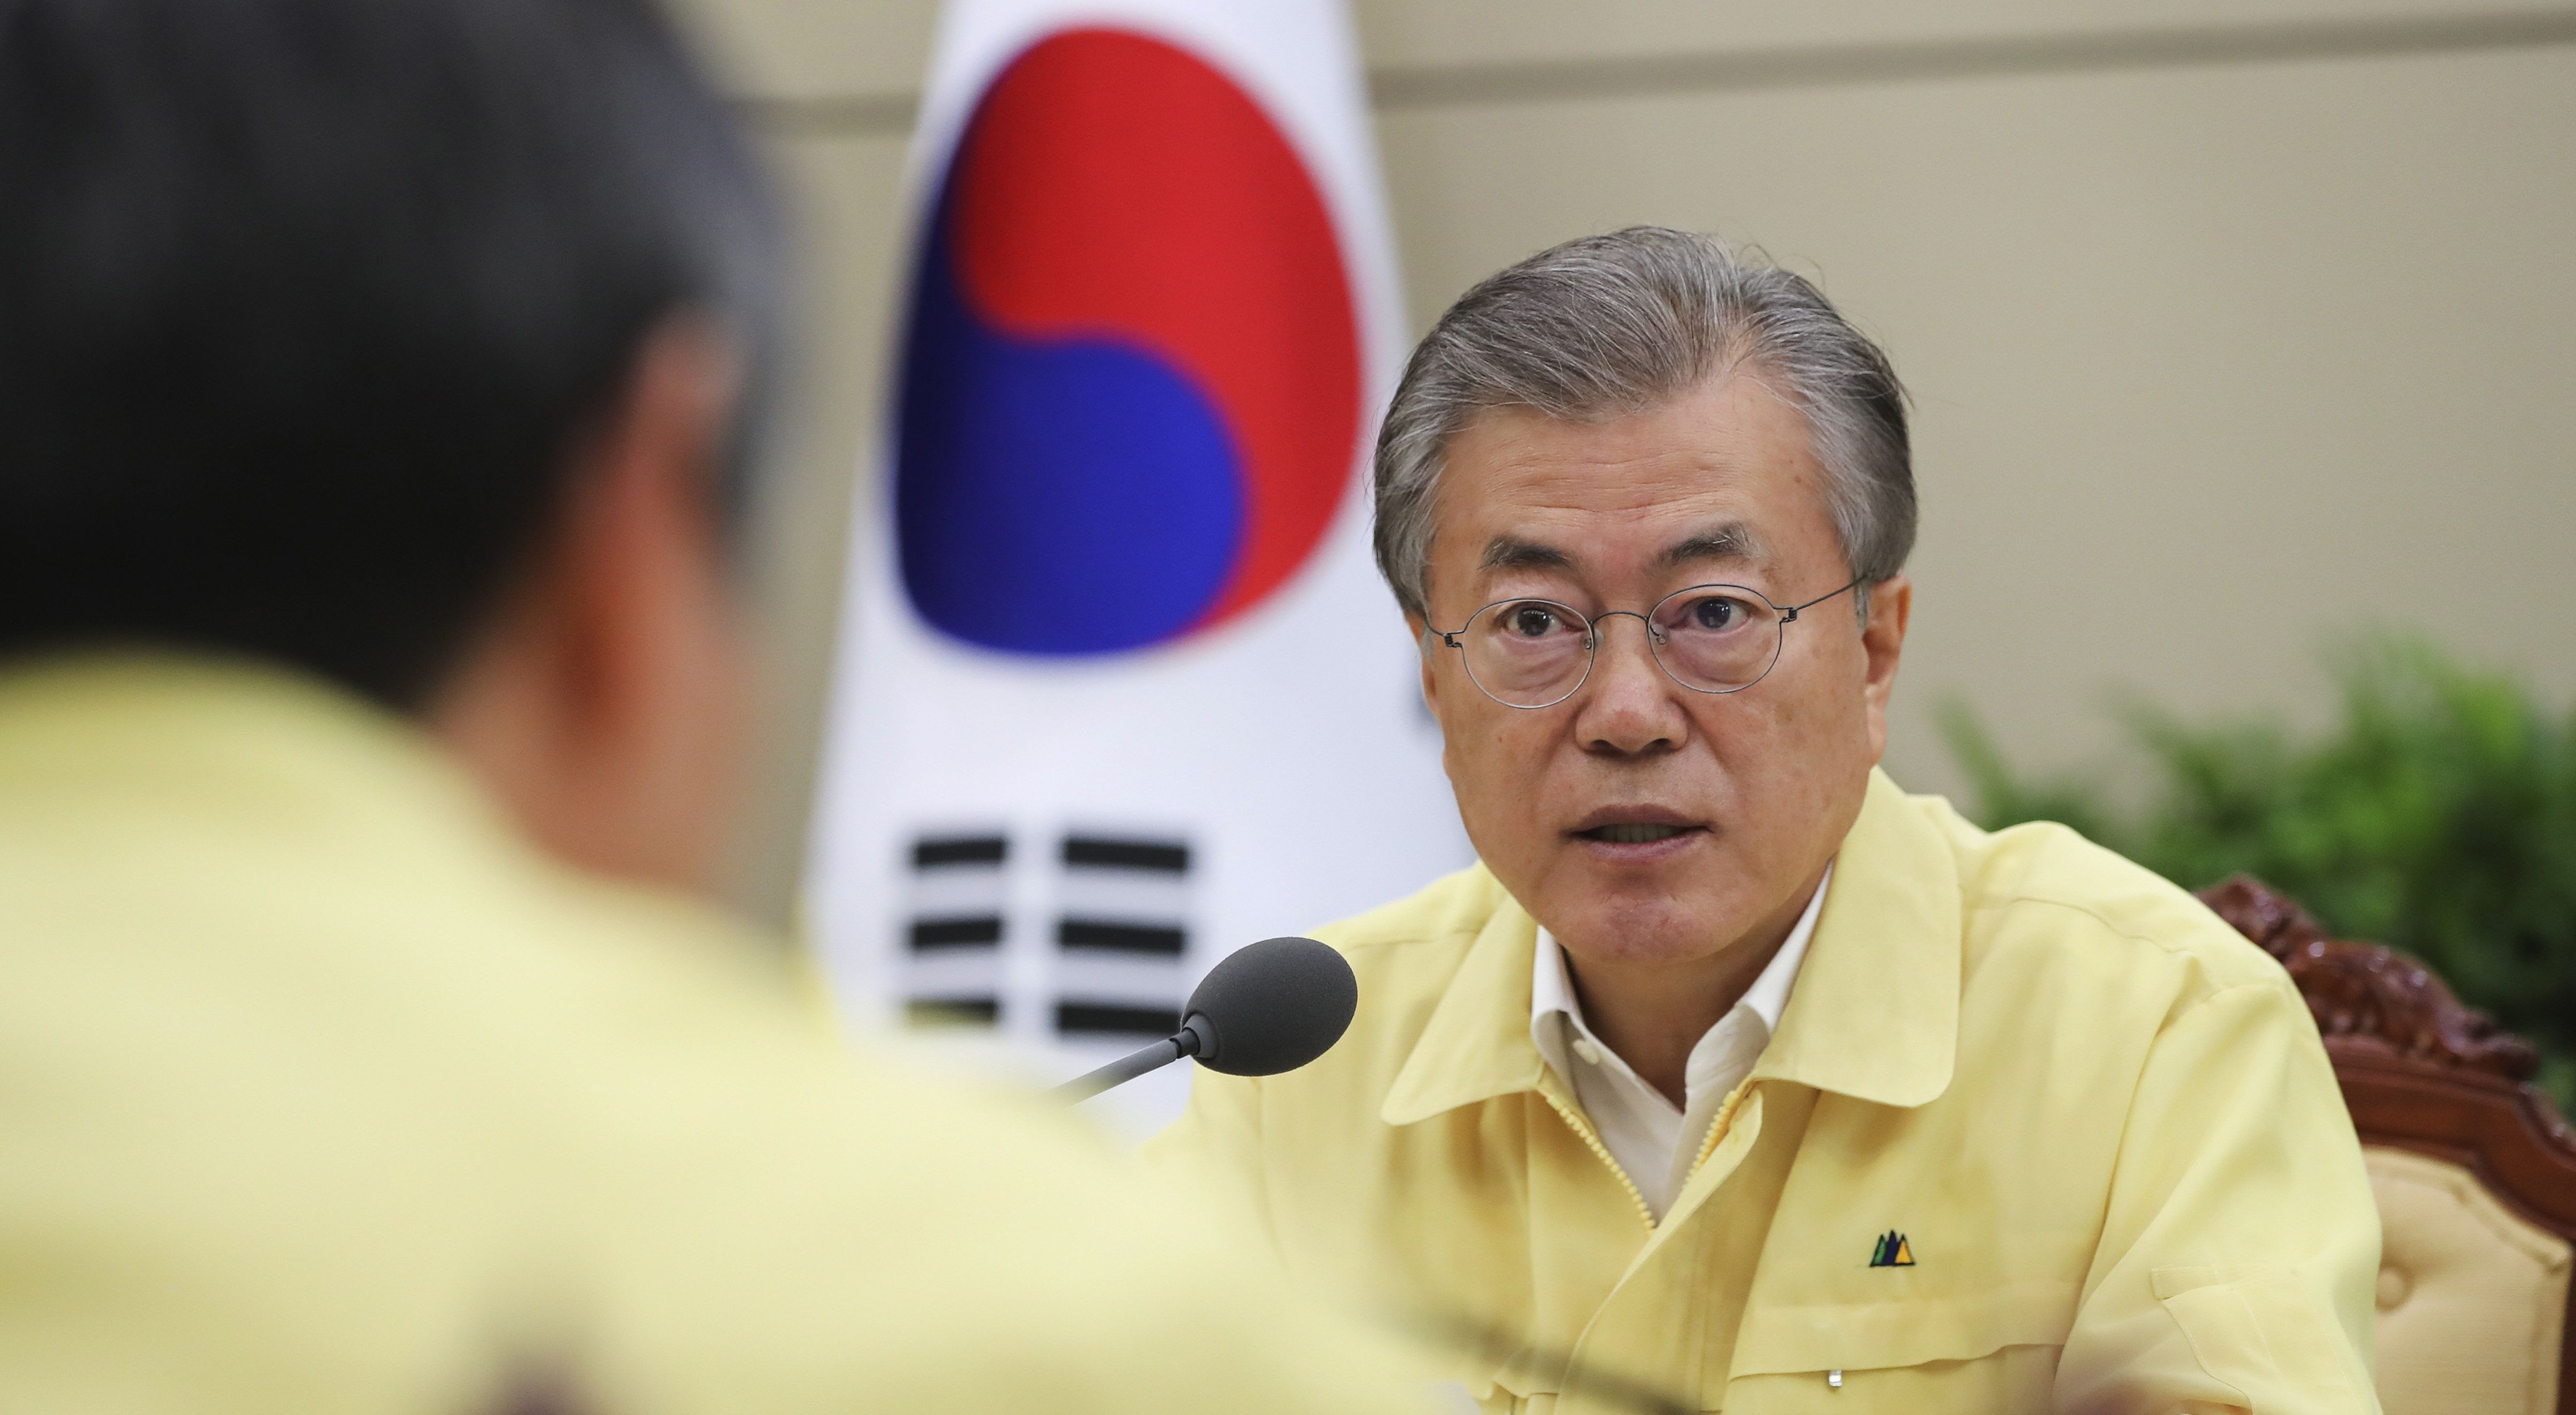 Hajóbaleset: a dél-koreai elnököt aggasztja, hogy nem halad az áldozatok felkutatása